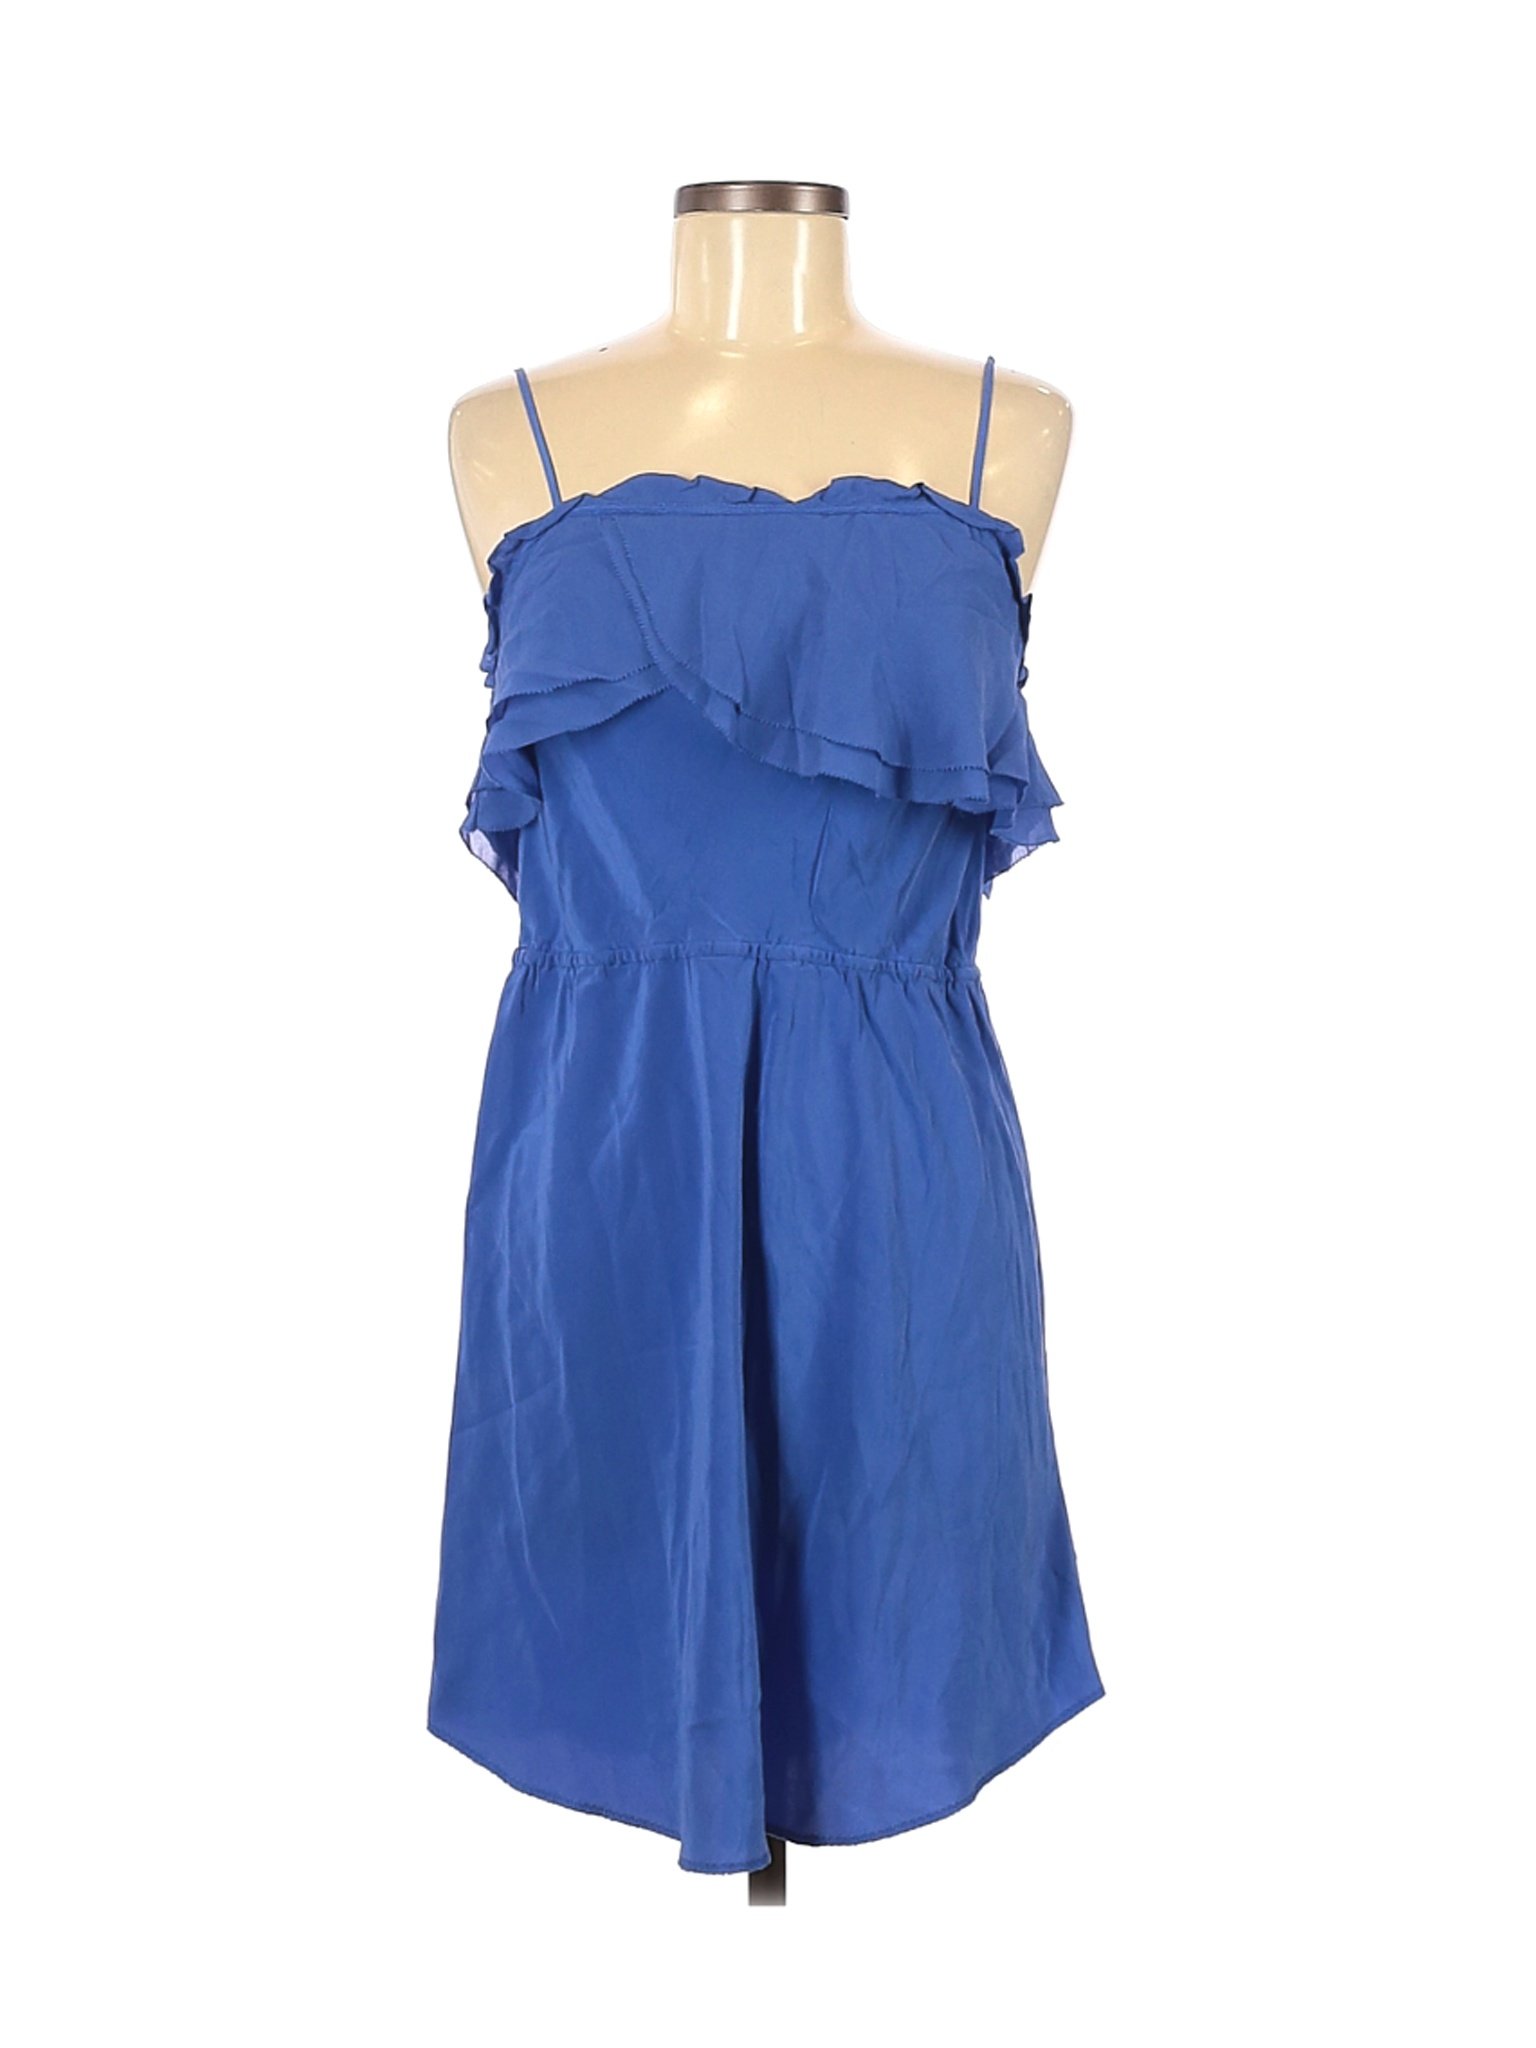 Wilfred Women Blue Casual Dress M | eBay